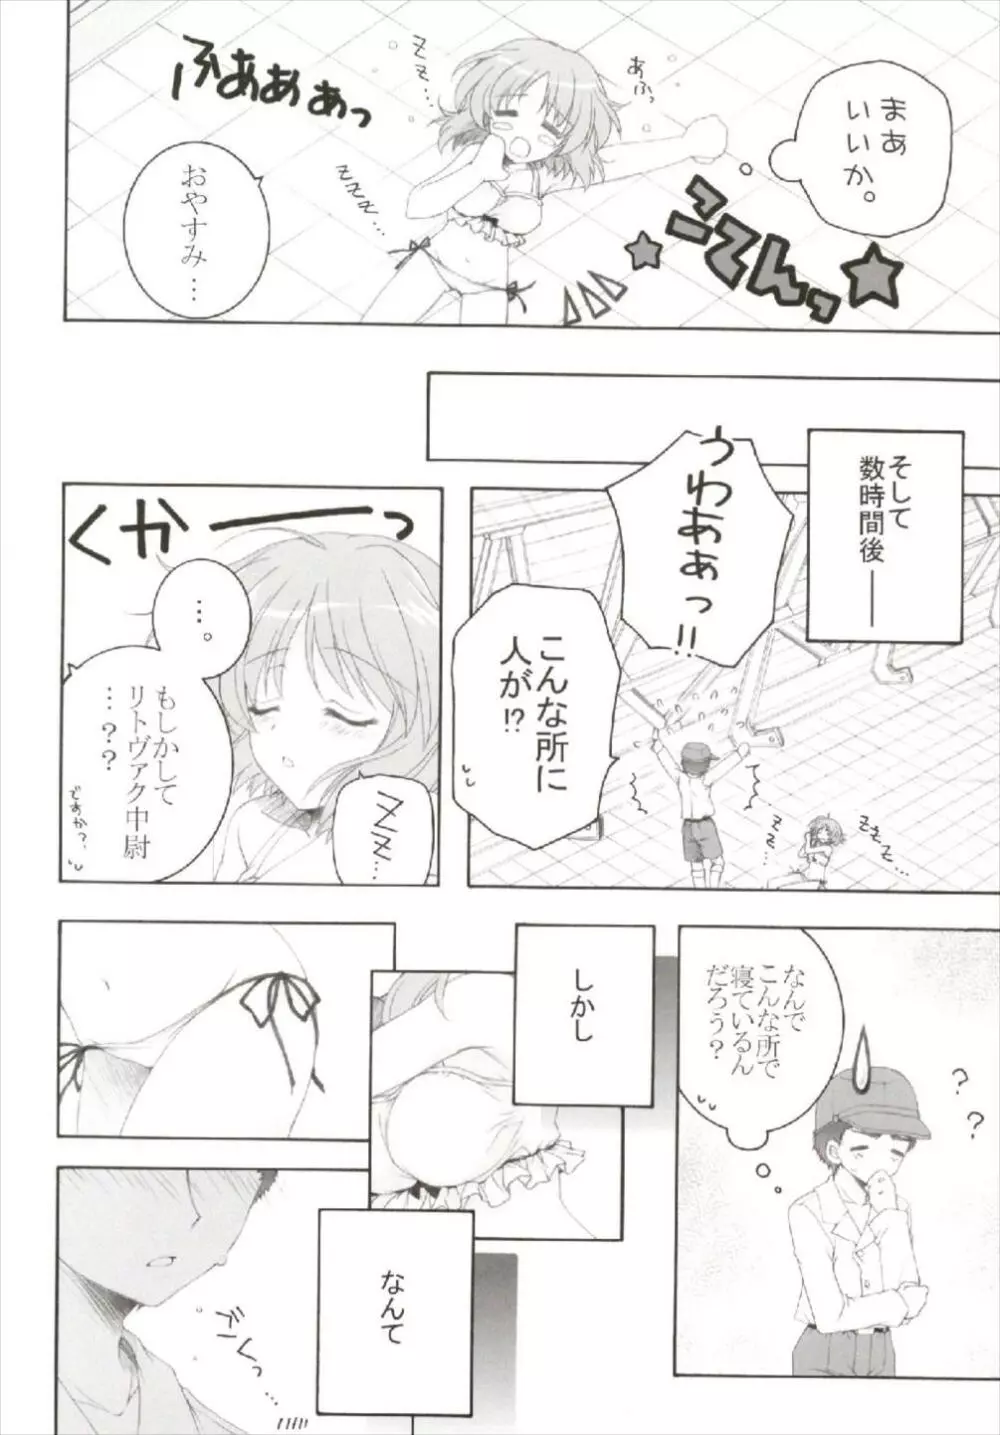 ちっちゃなNIJI色再録集 - page14